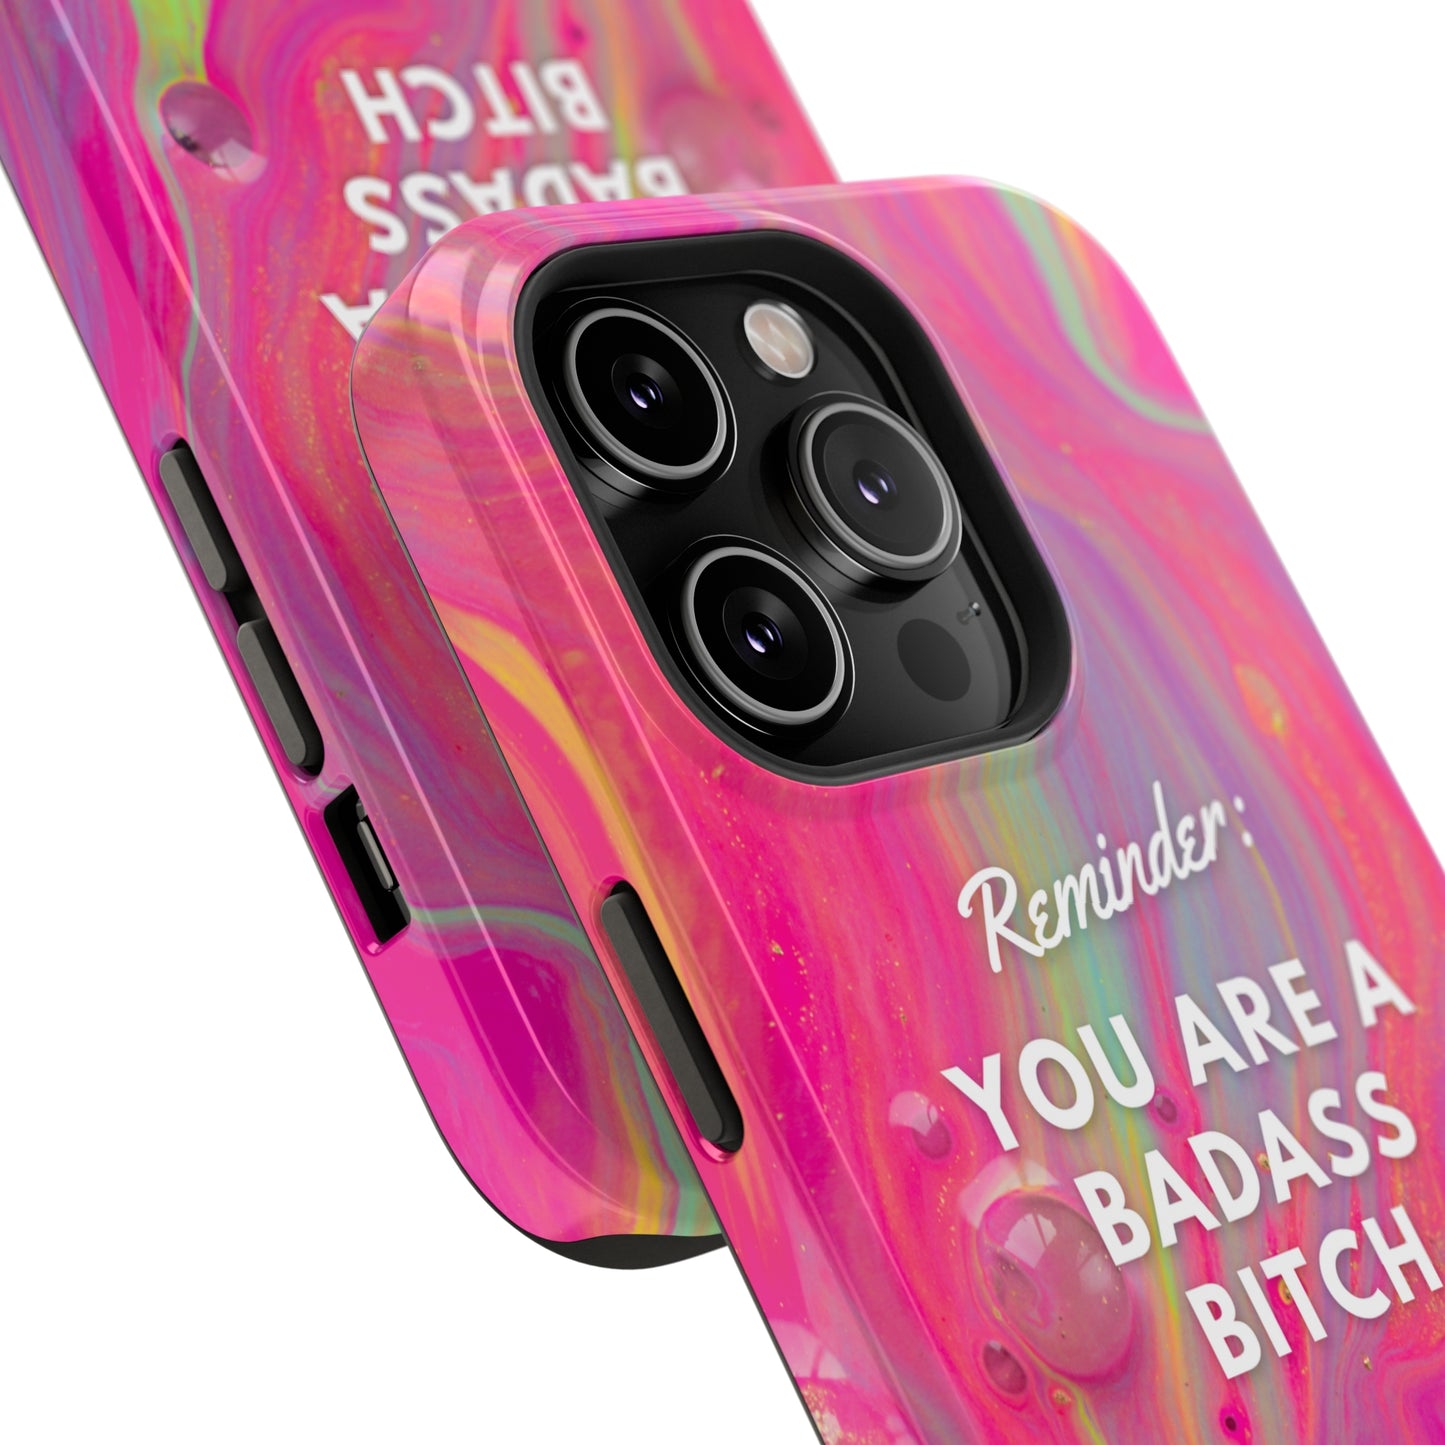 Bad Ass Bitch Phone Case